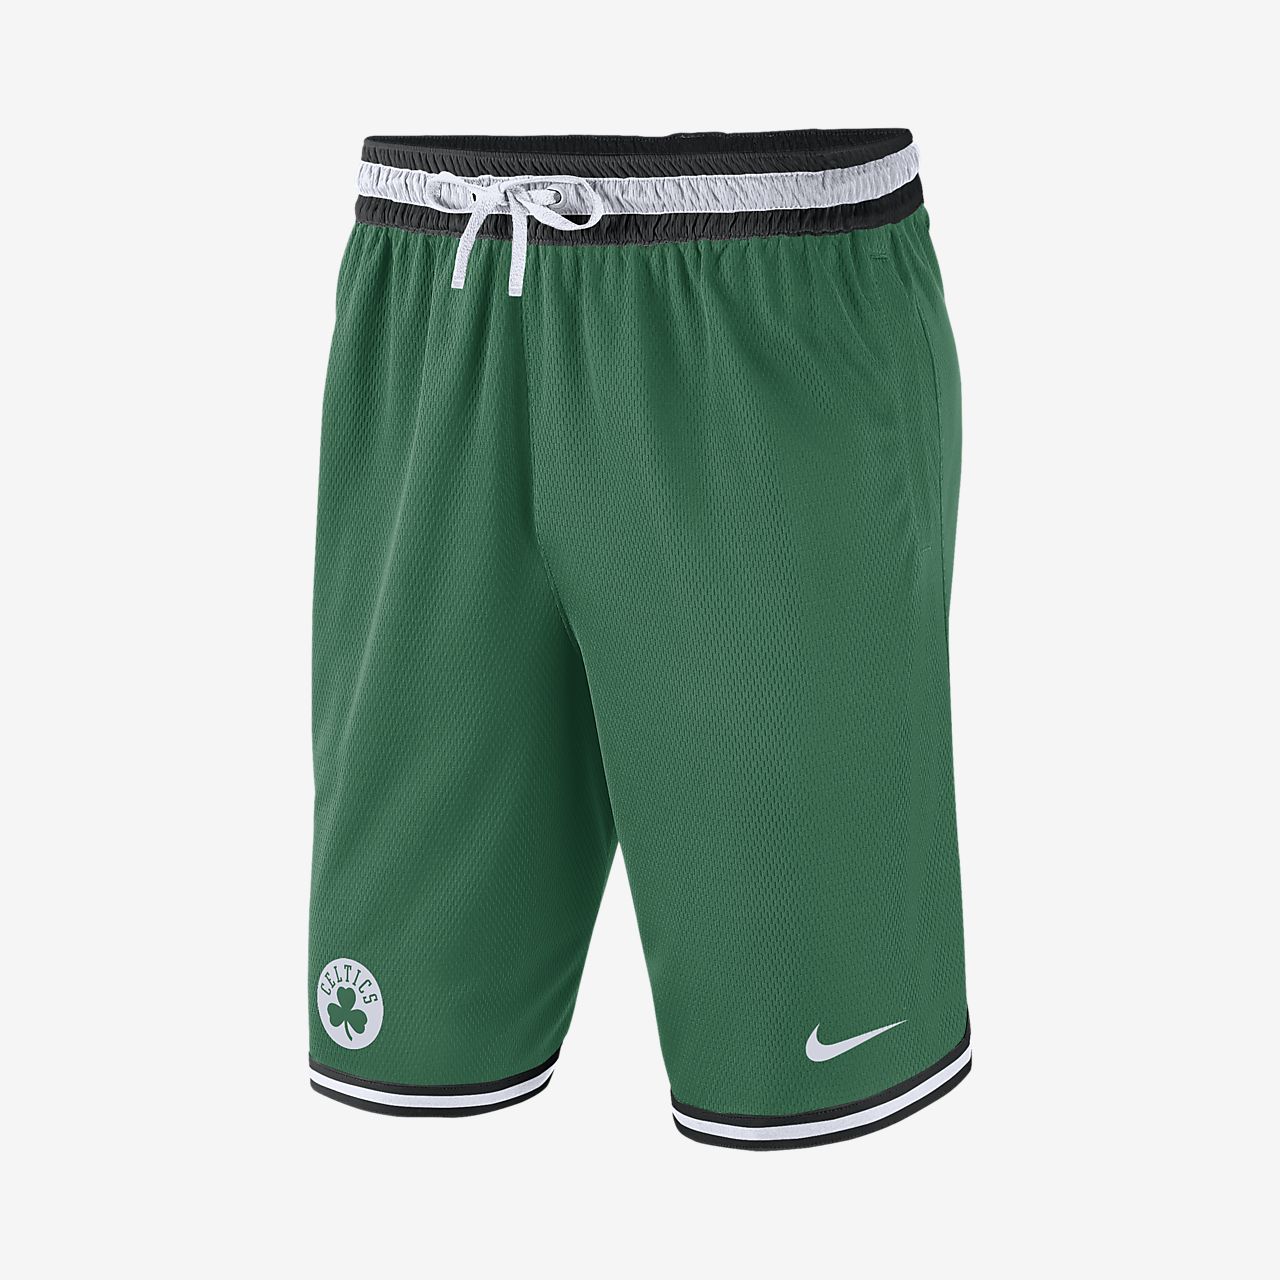 Boston Celtics Nike Men's NBA Shorts 